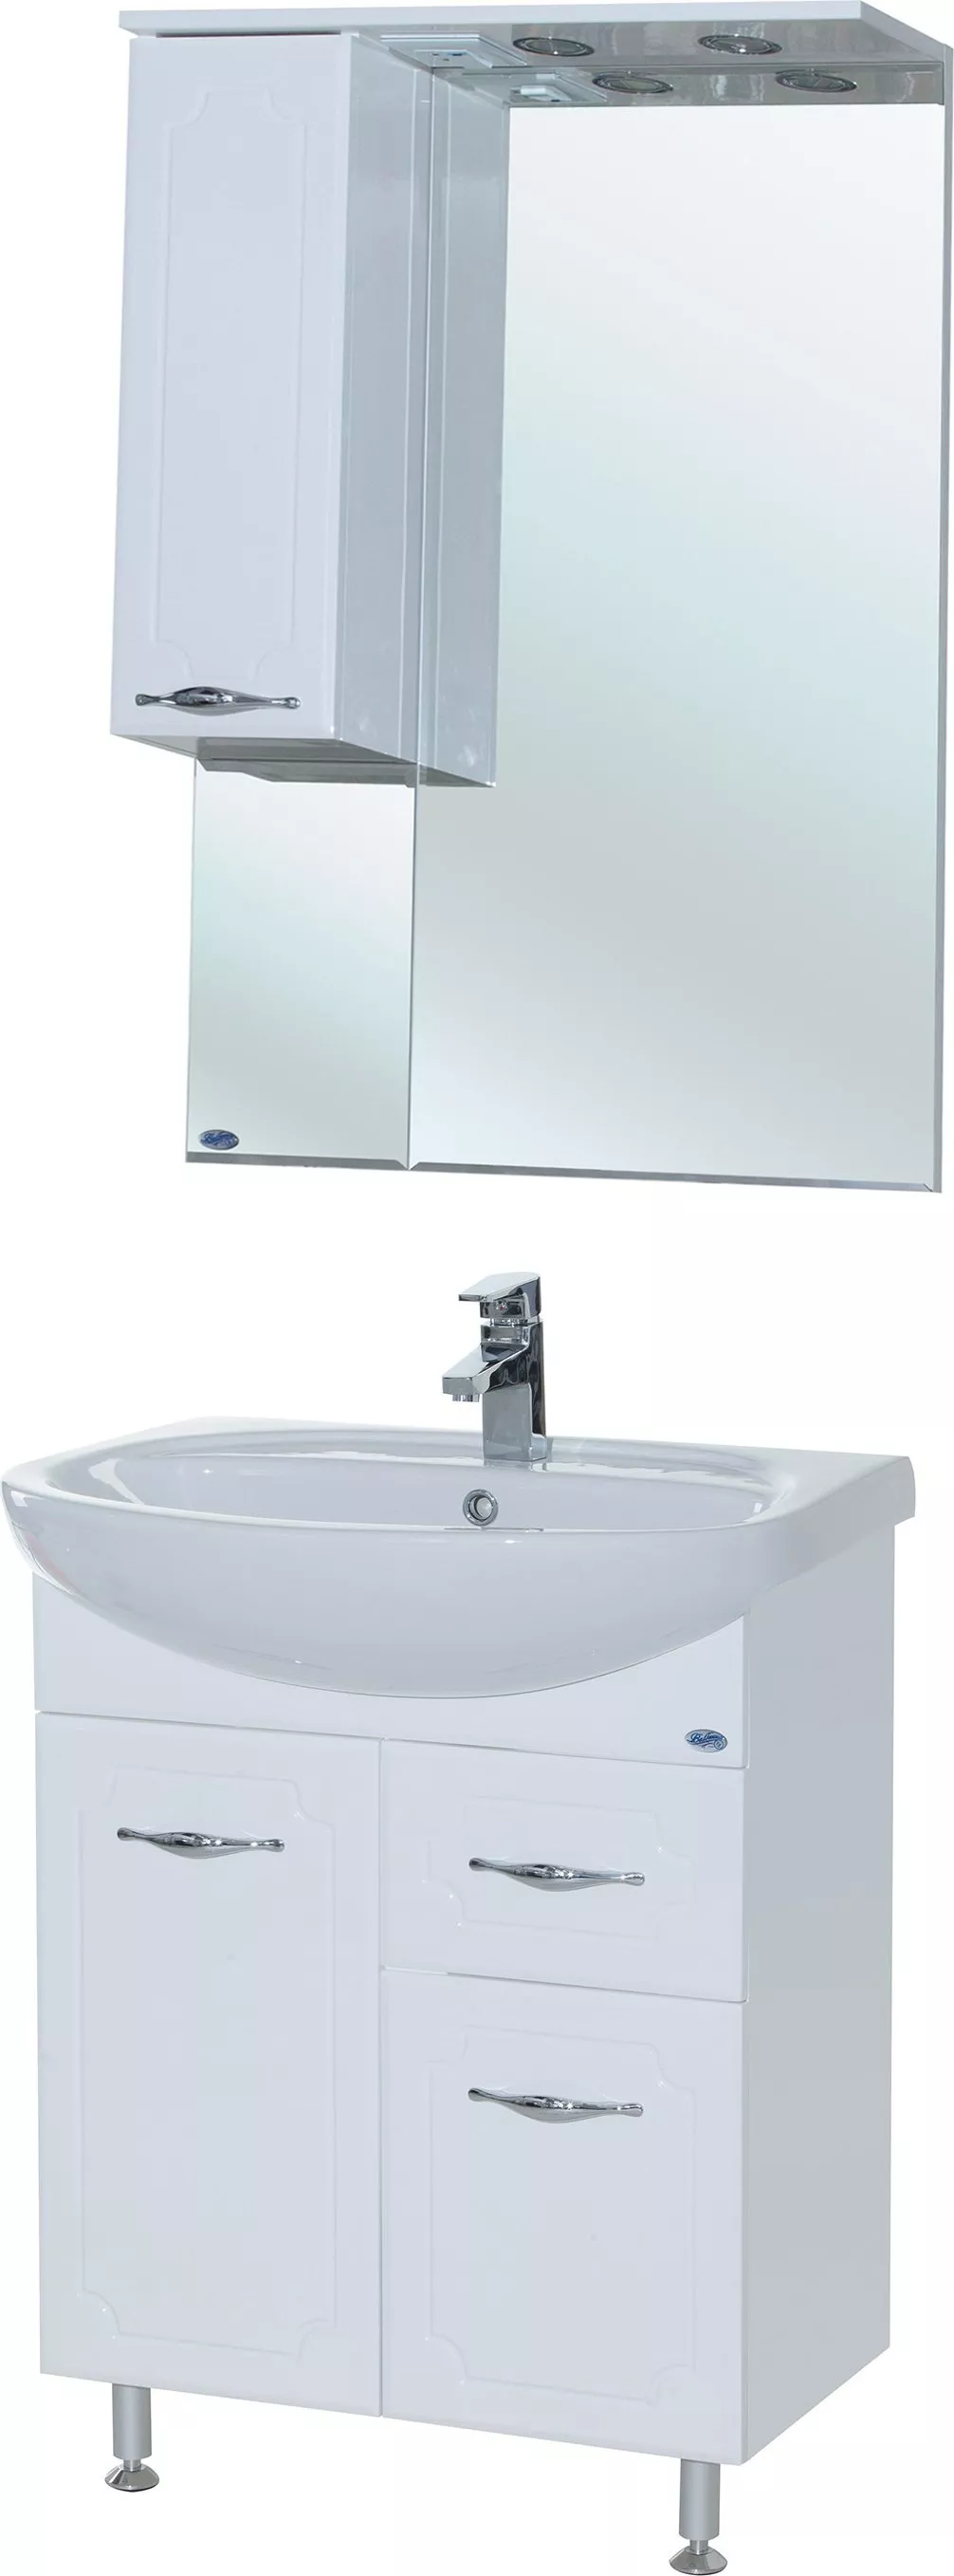 Мебель для ванной Bellezza Стелла 65 1 ящик белая, размер 66, цвет белый - фото 1